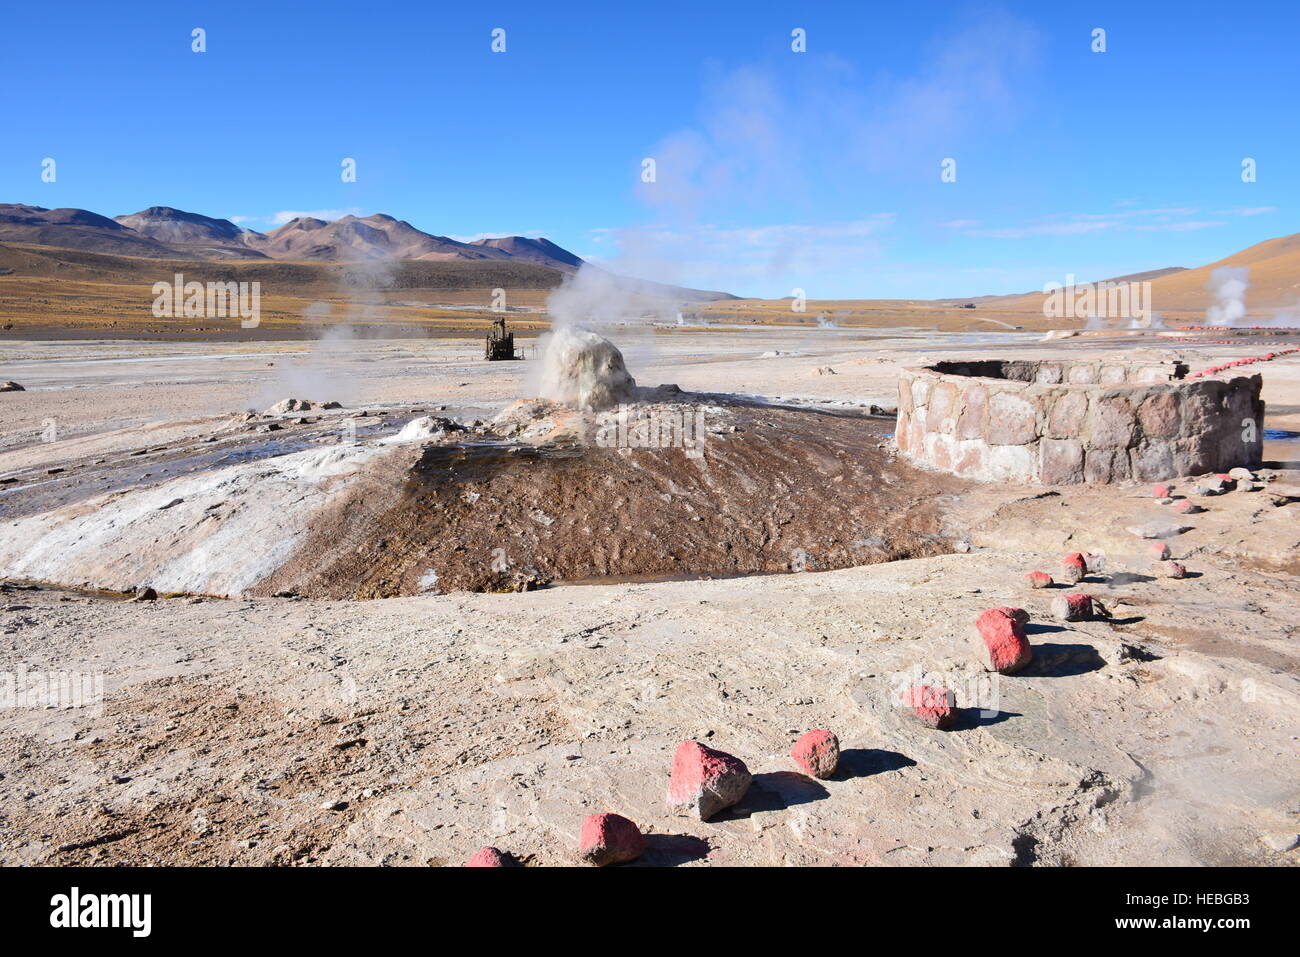 Paysage de montagnes et des geysers dans le désert d'Atacama au Chili Banque D'Images